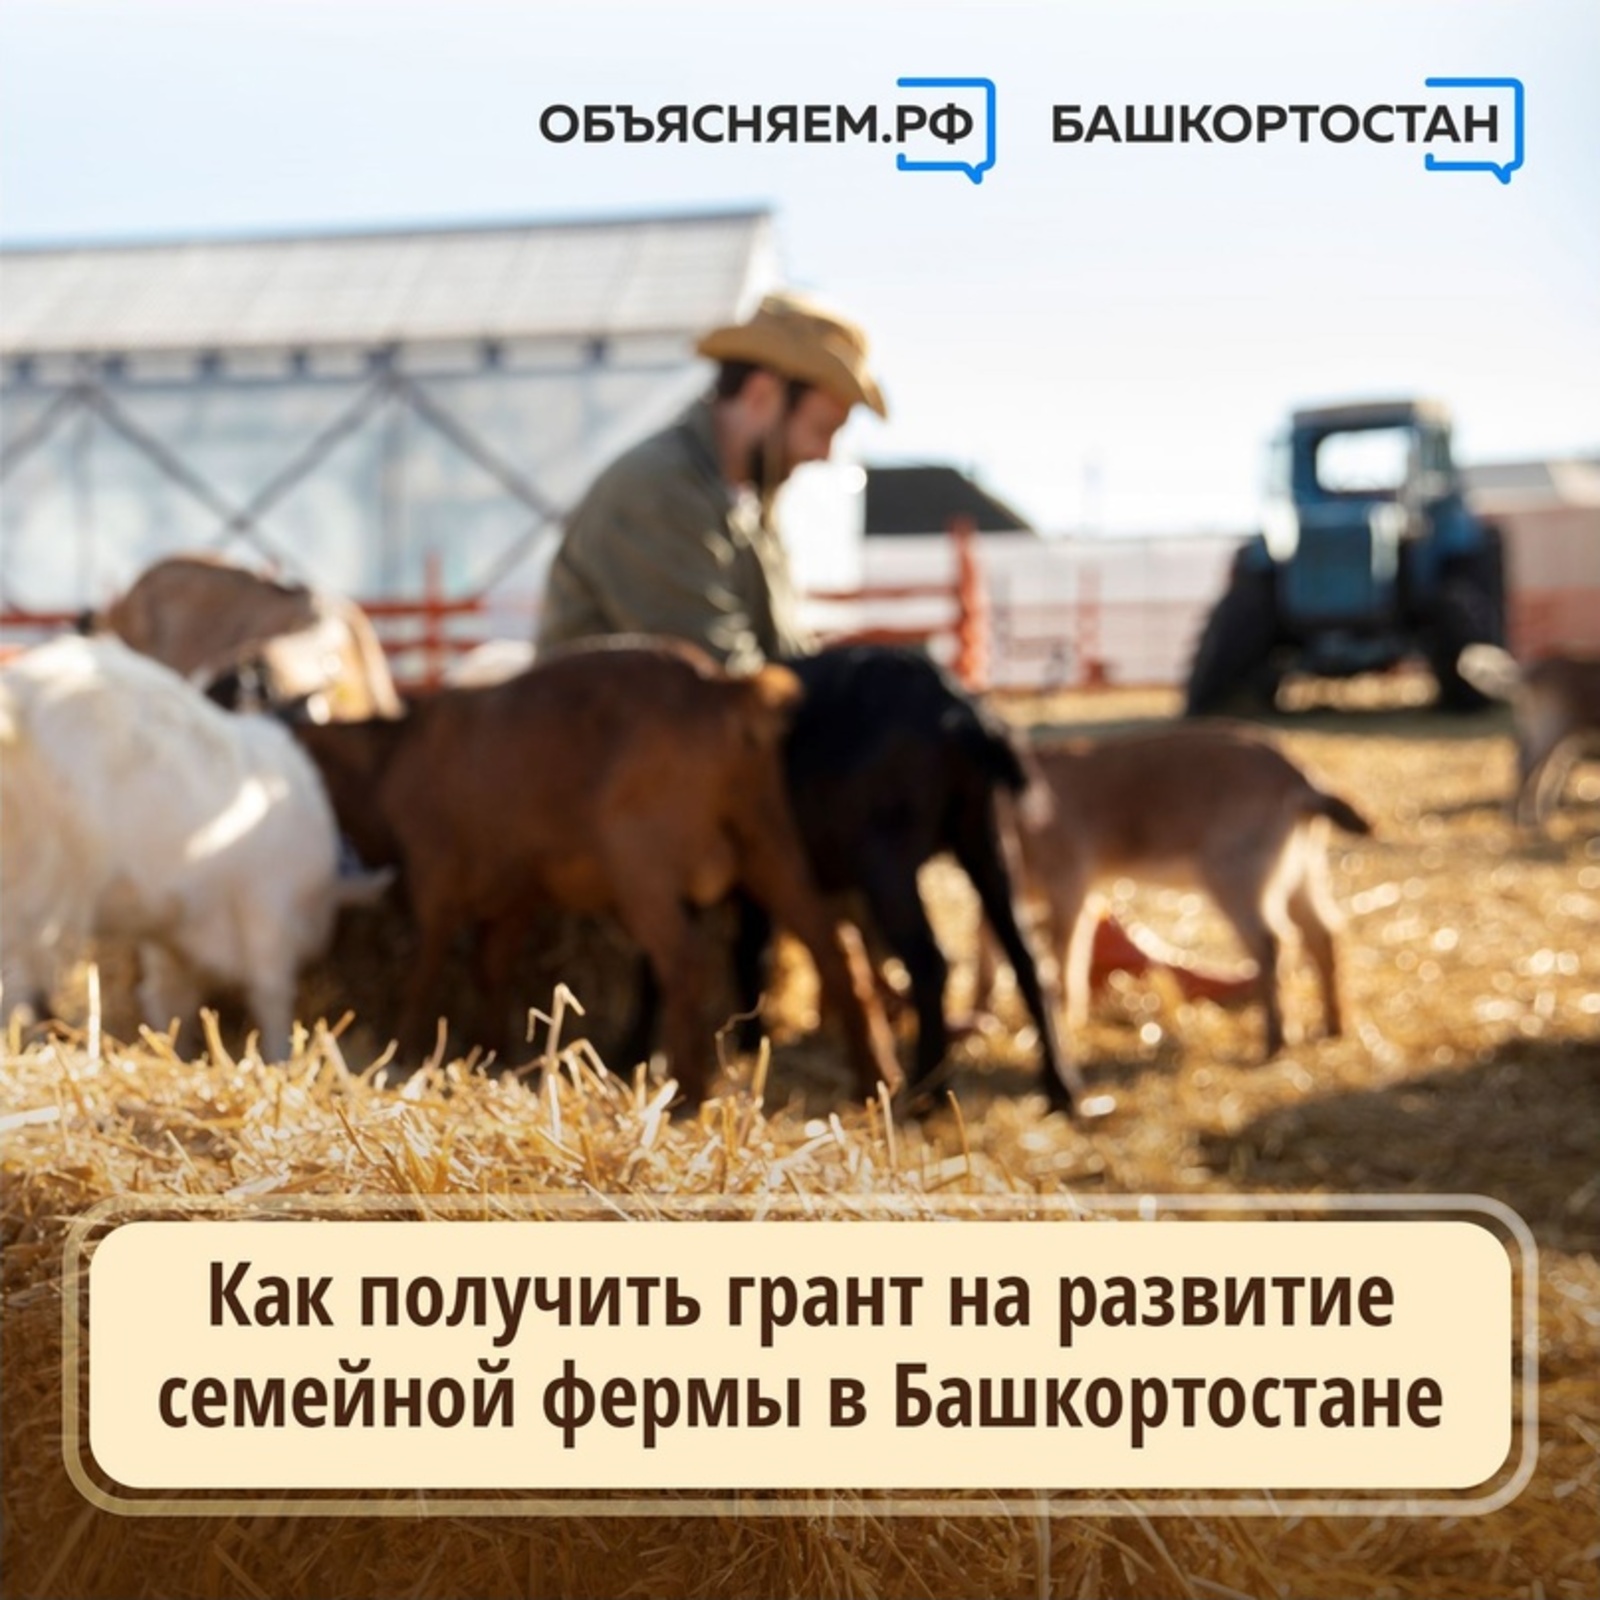 Как получить грант на развитие семейной фермы в Башкирии?